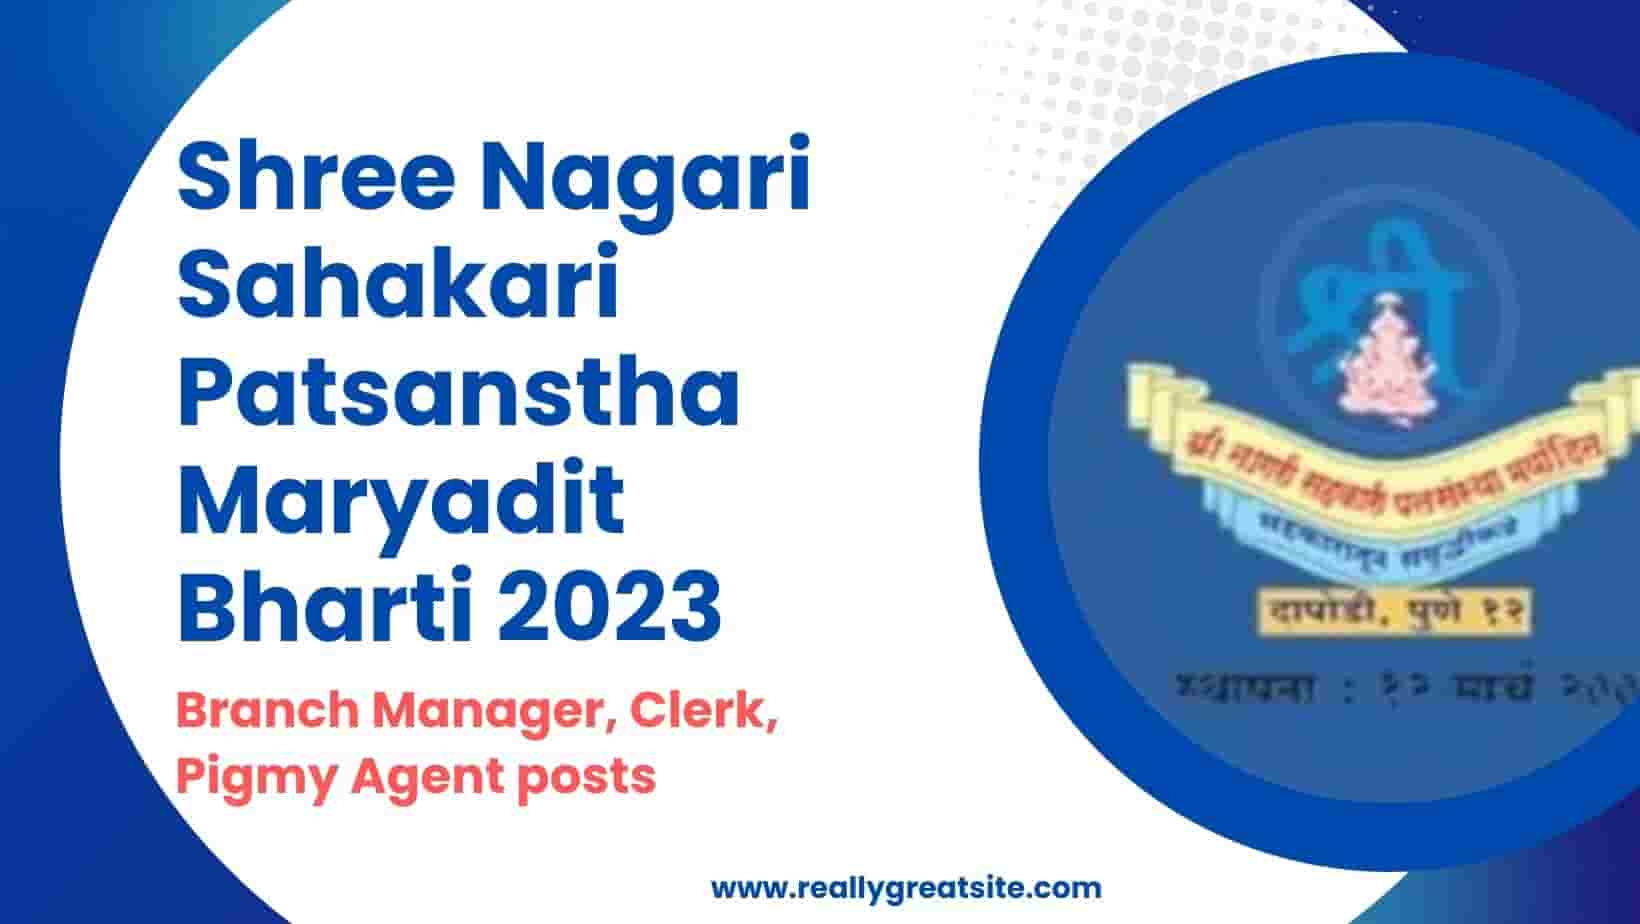 Shree Nagari Sahakari Patsanstha Maryadit Bharti 2023